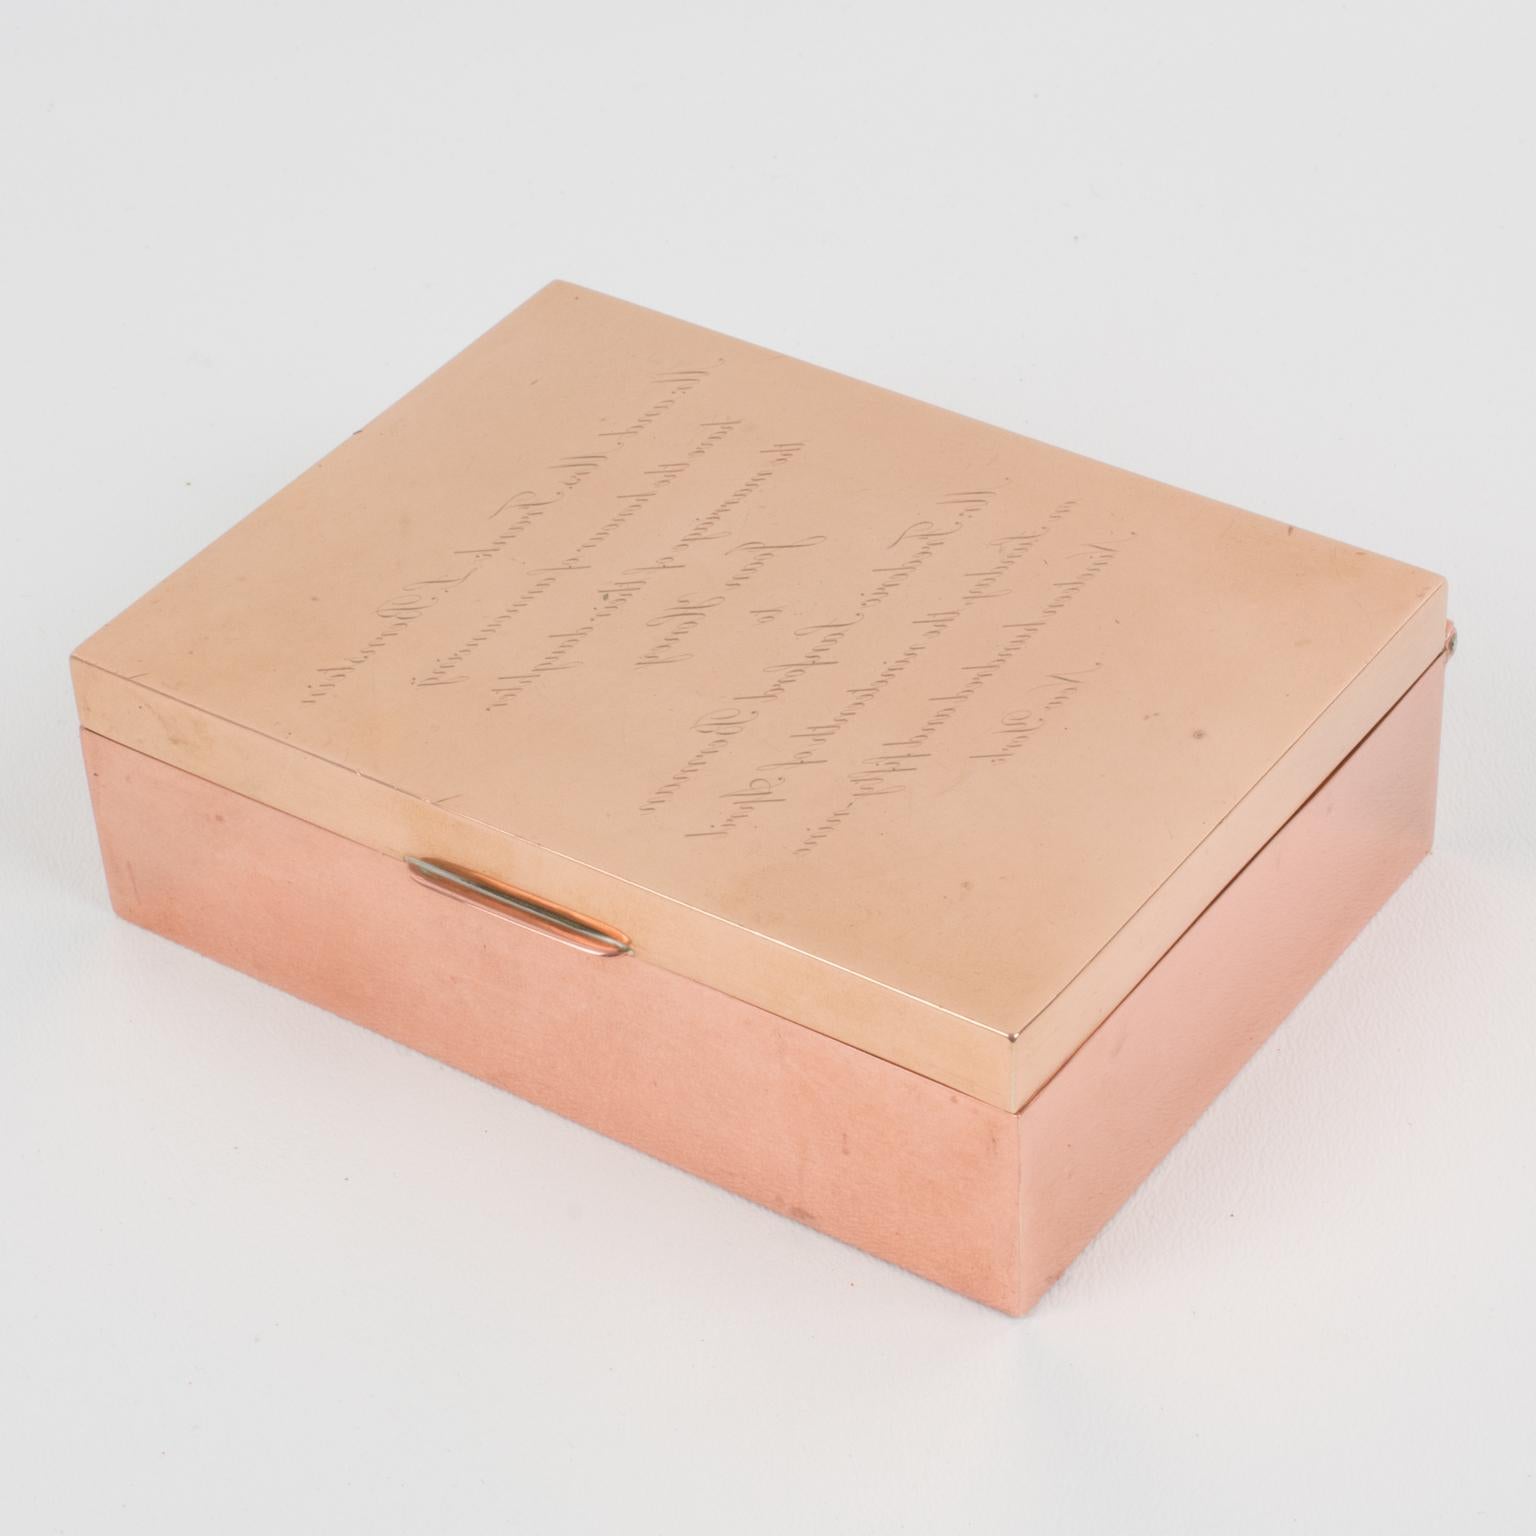 Cartier Paris a réalisé cette boîte décorative sophistiquée en cuivre et en laiton dans les années 1950. Il s'agit d'une boîte à puzzle qui utilise la technique d'écriture spéculaire de Léonard de Vinci*. Si l'on regarde la boîte en face, le texte